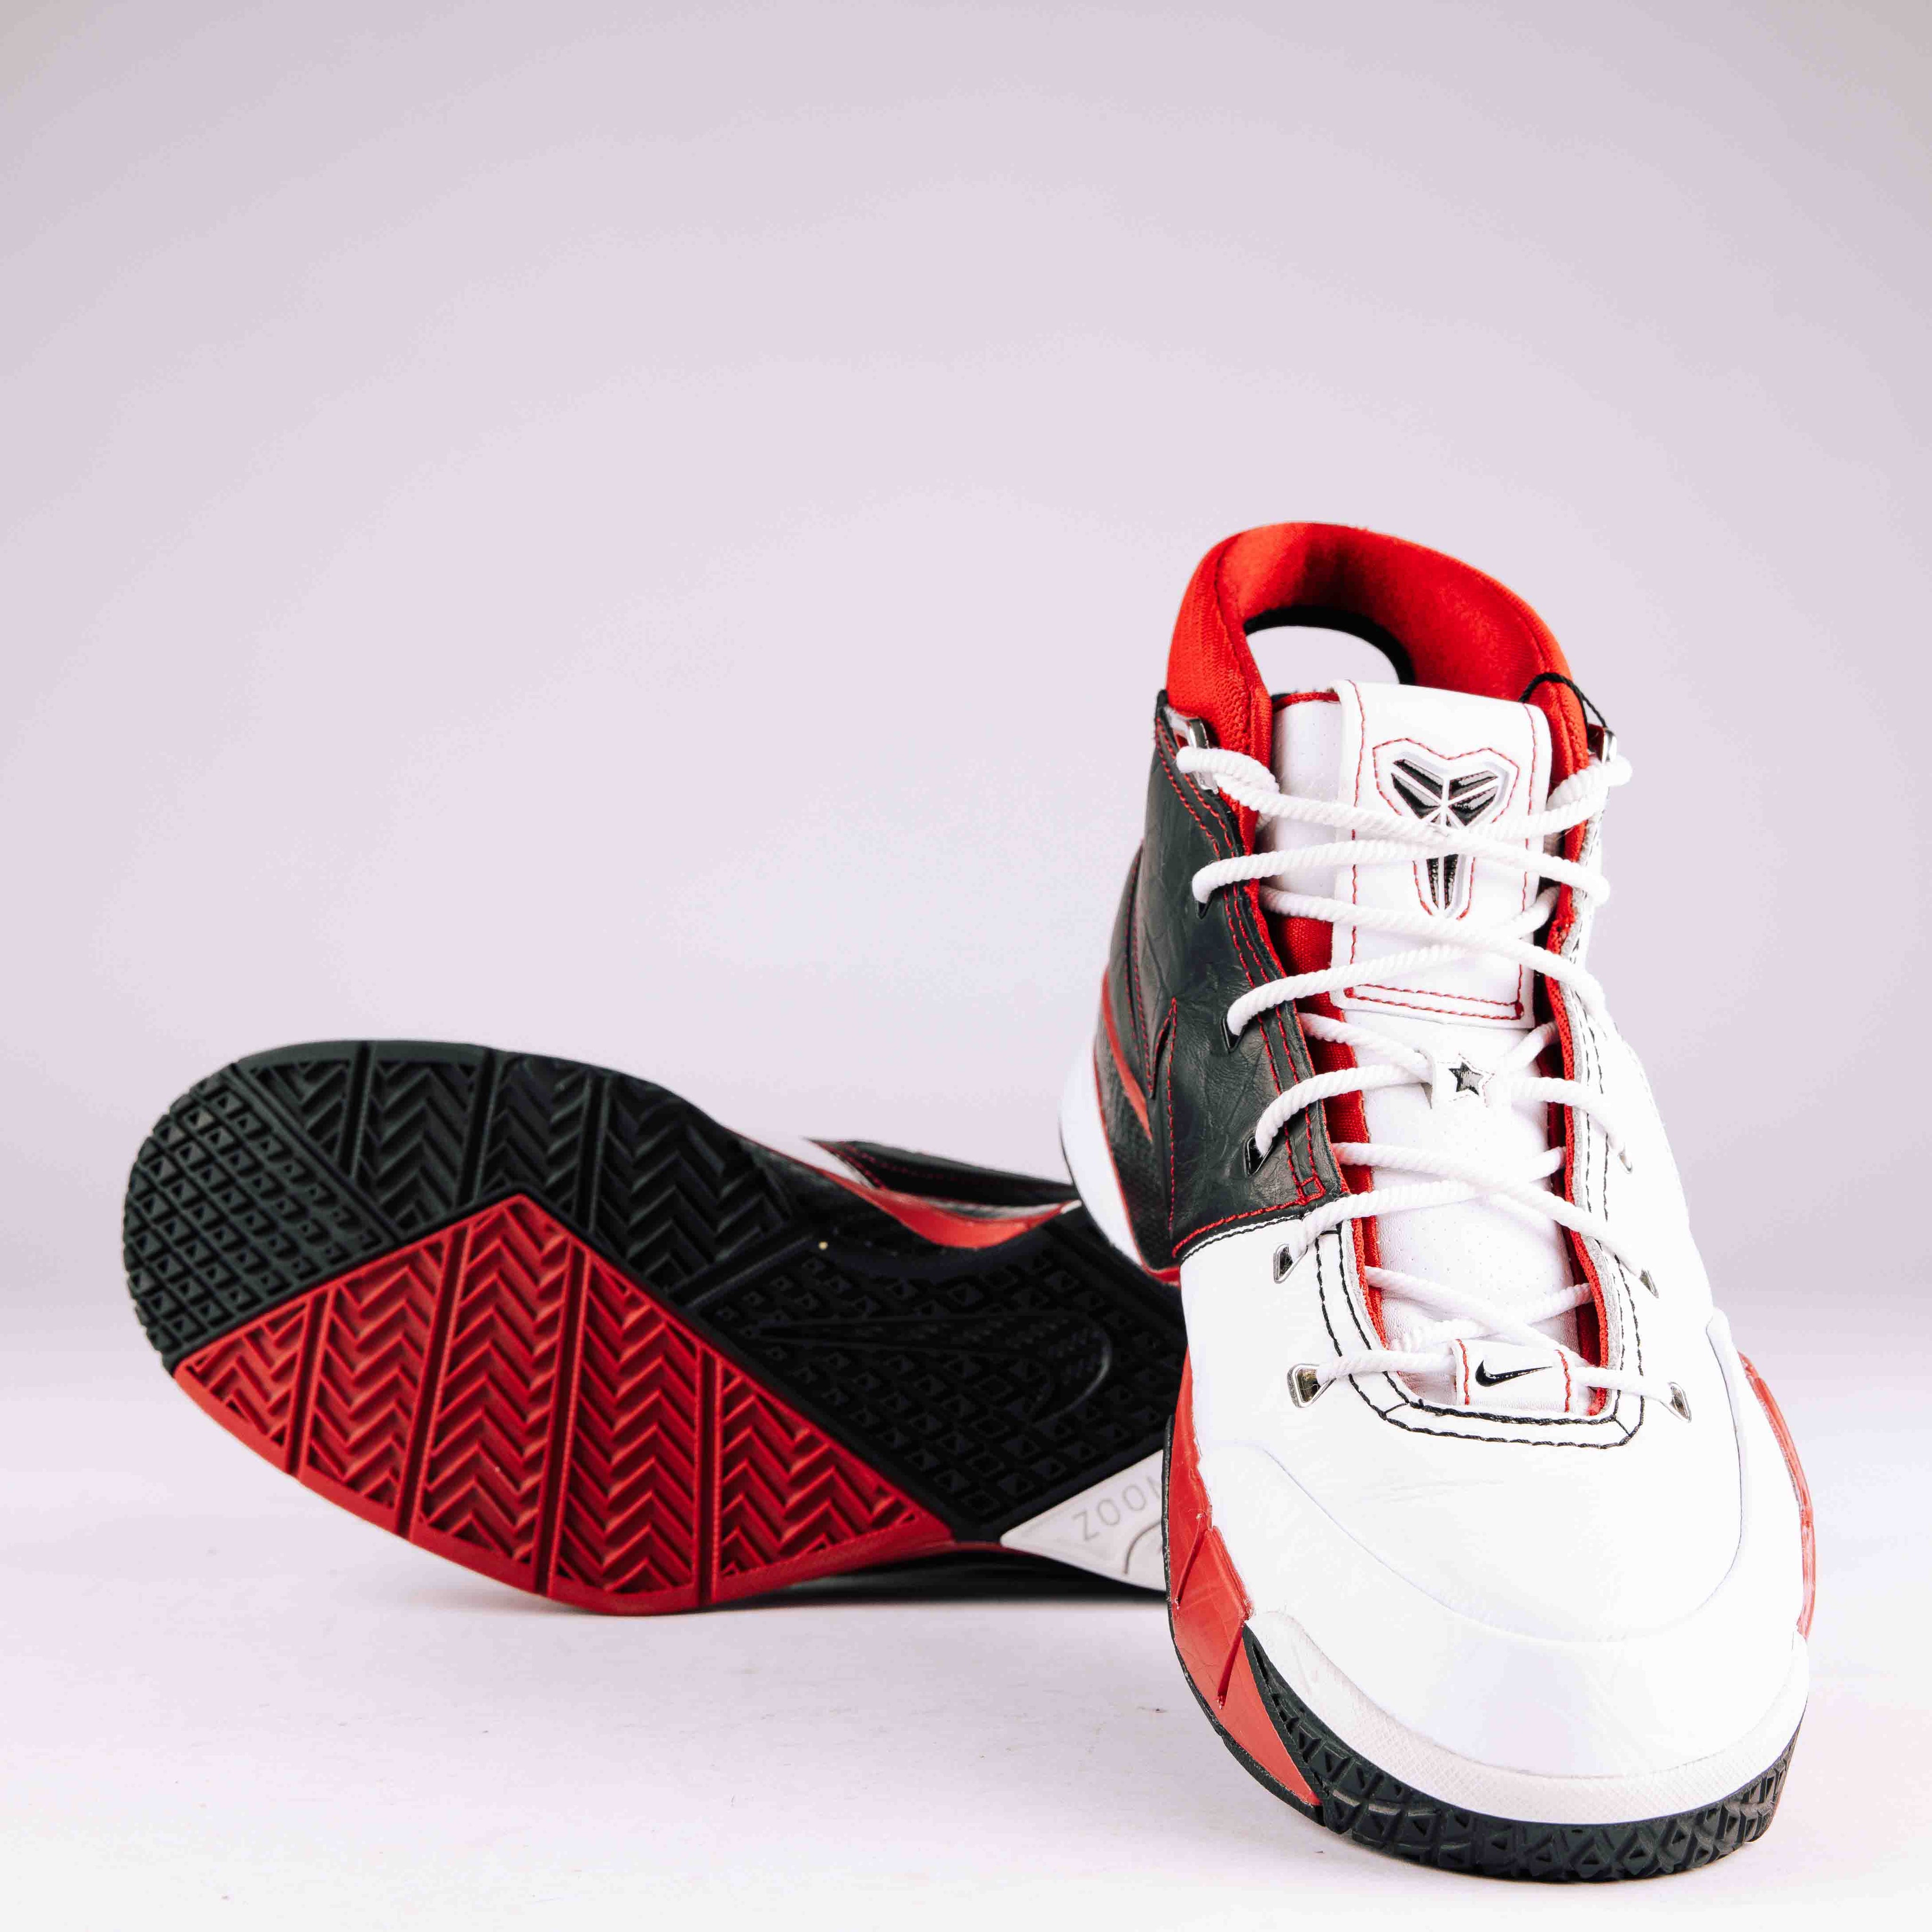 Nike Kobe 1 Protro White Black Red (All-Star) (Used)